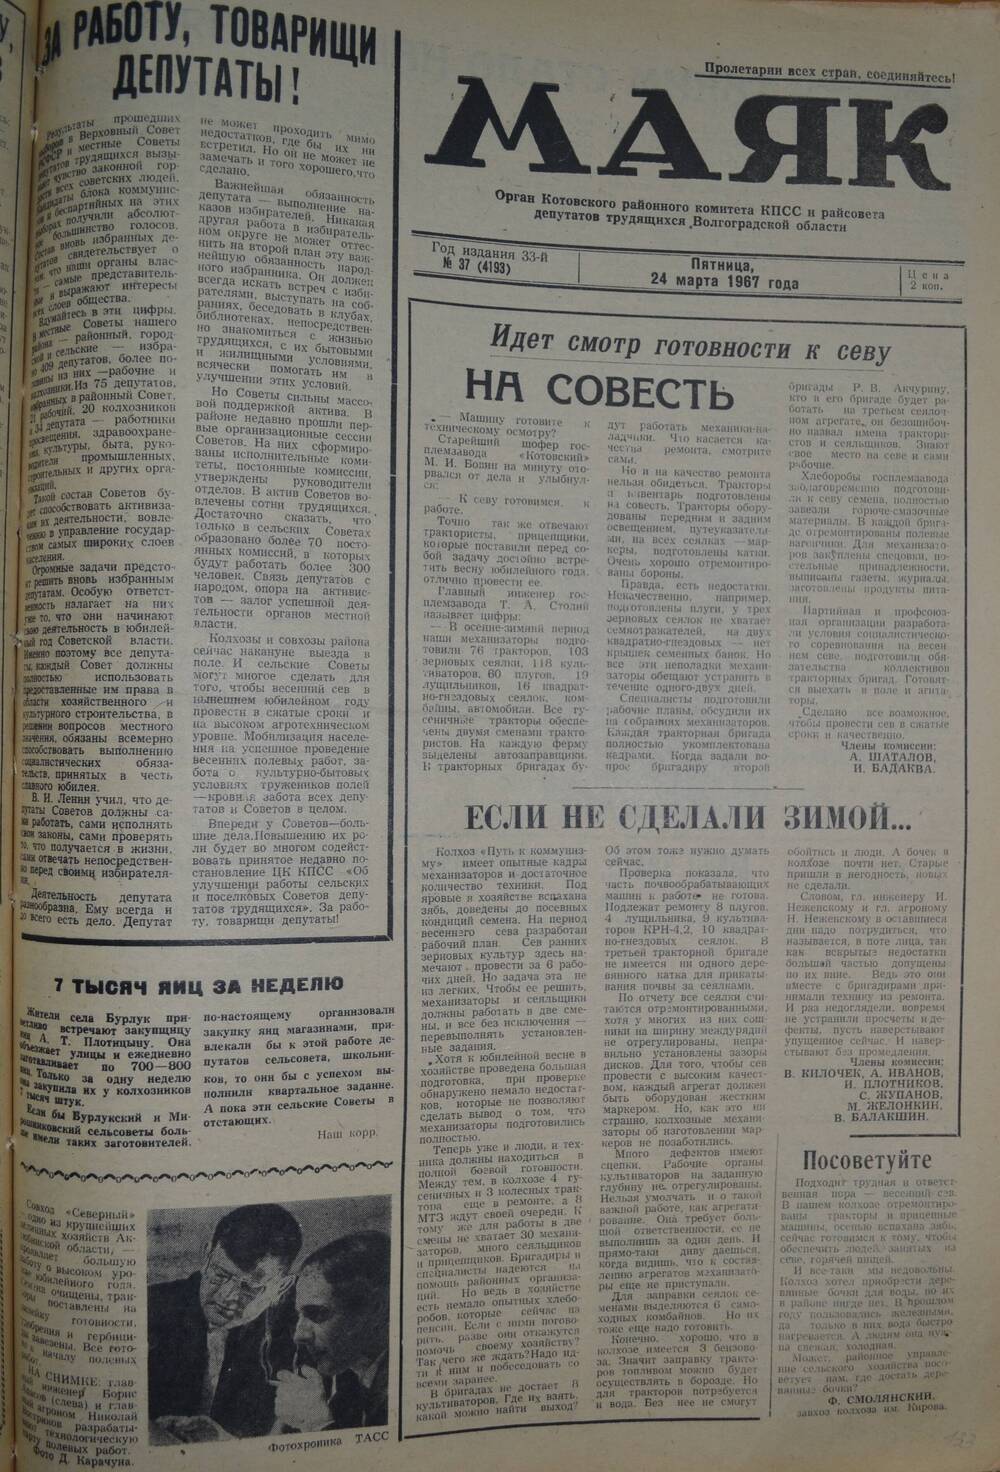 Газета Маяк № 37 (4193). Пятница, 24 марта 1967 года.